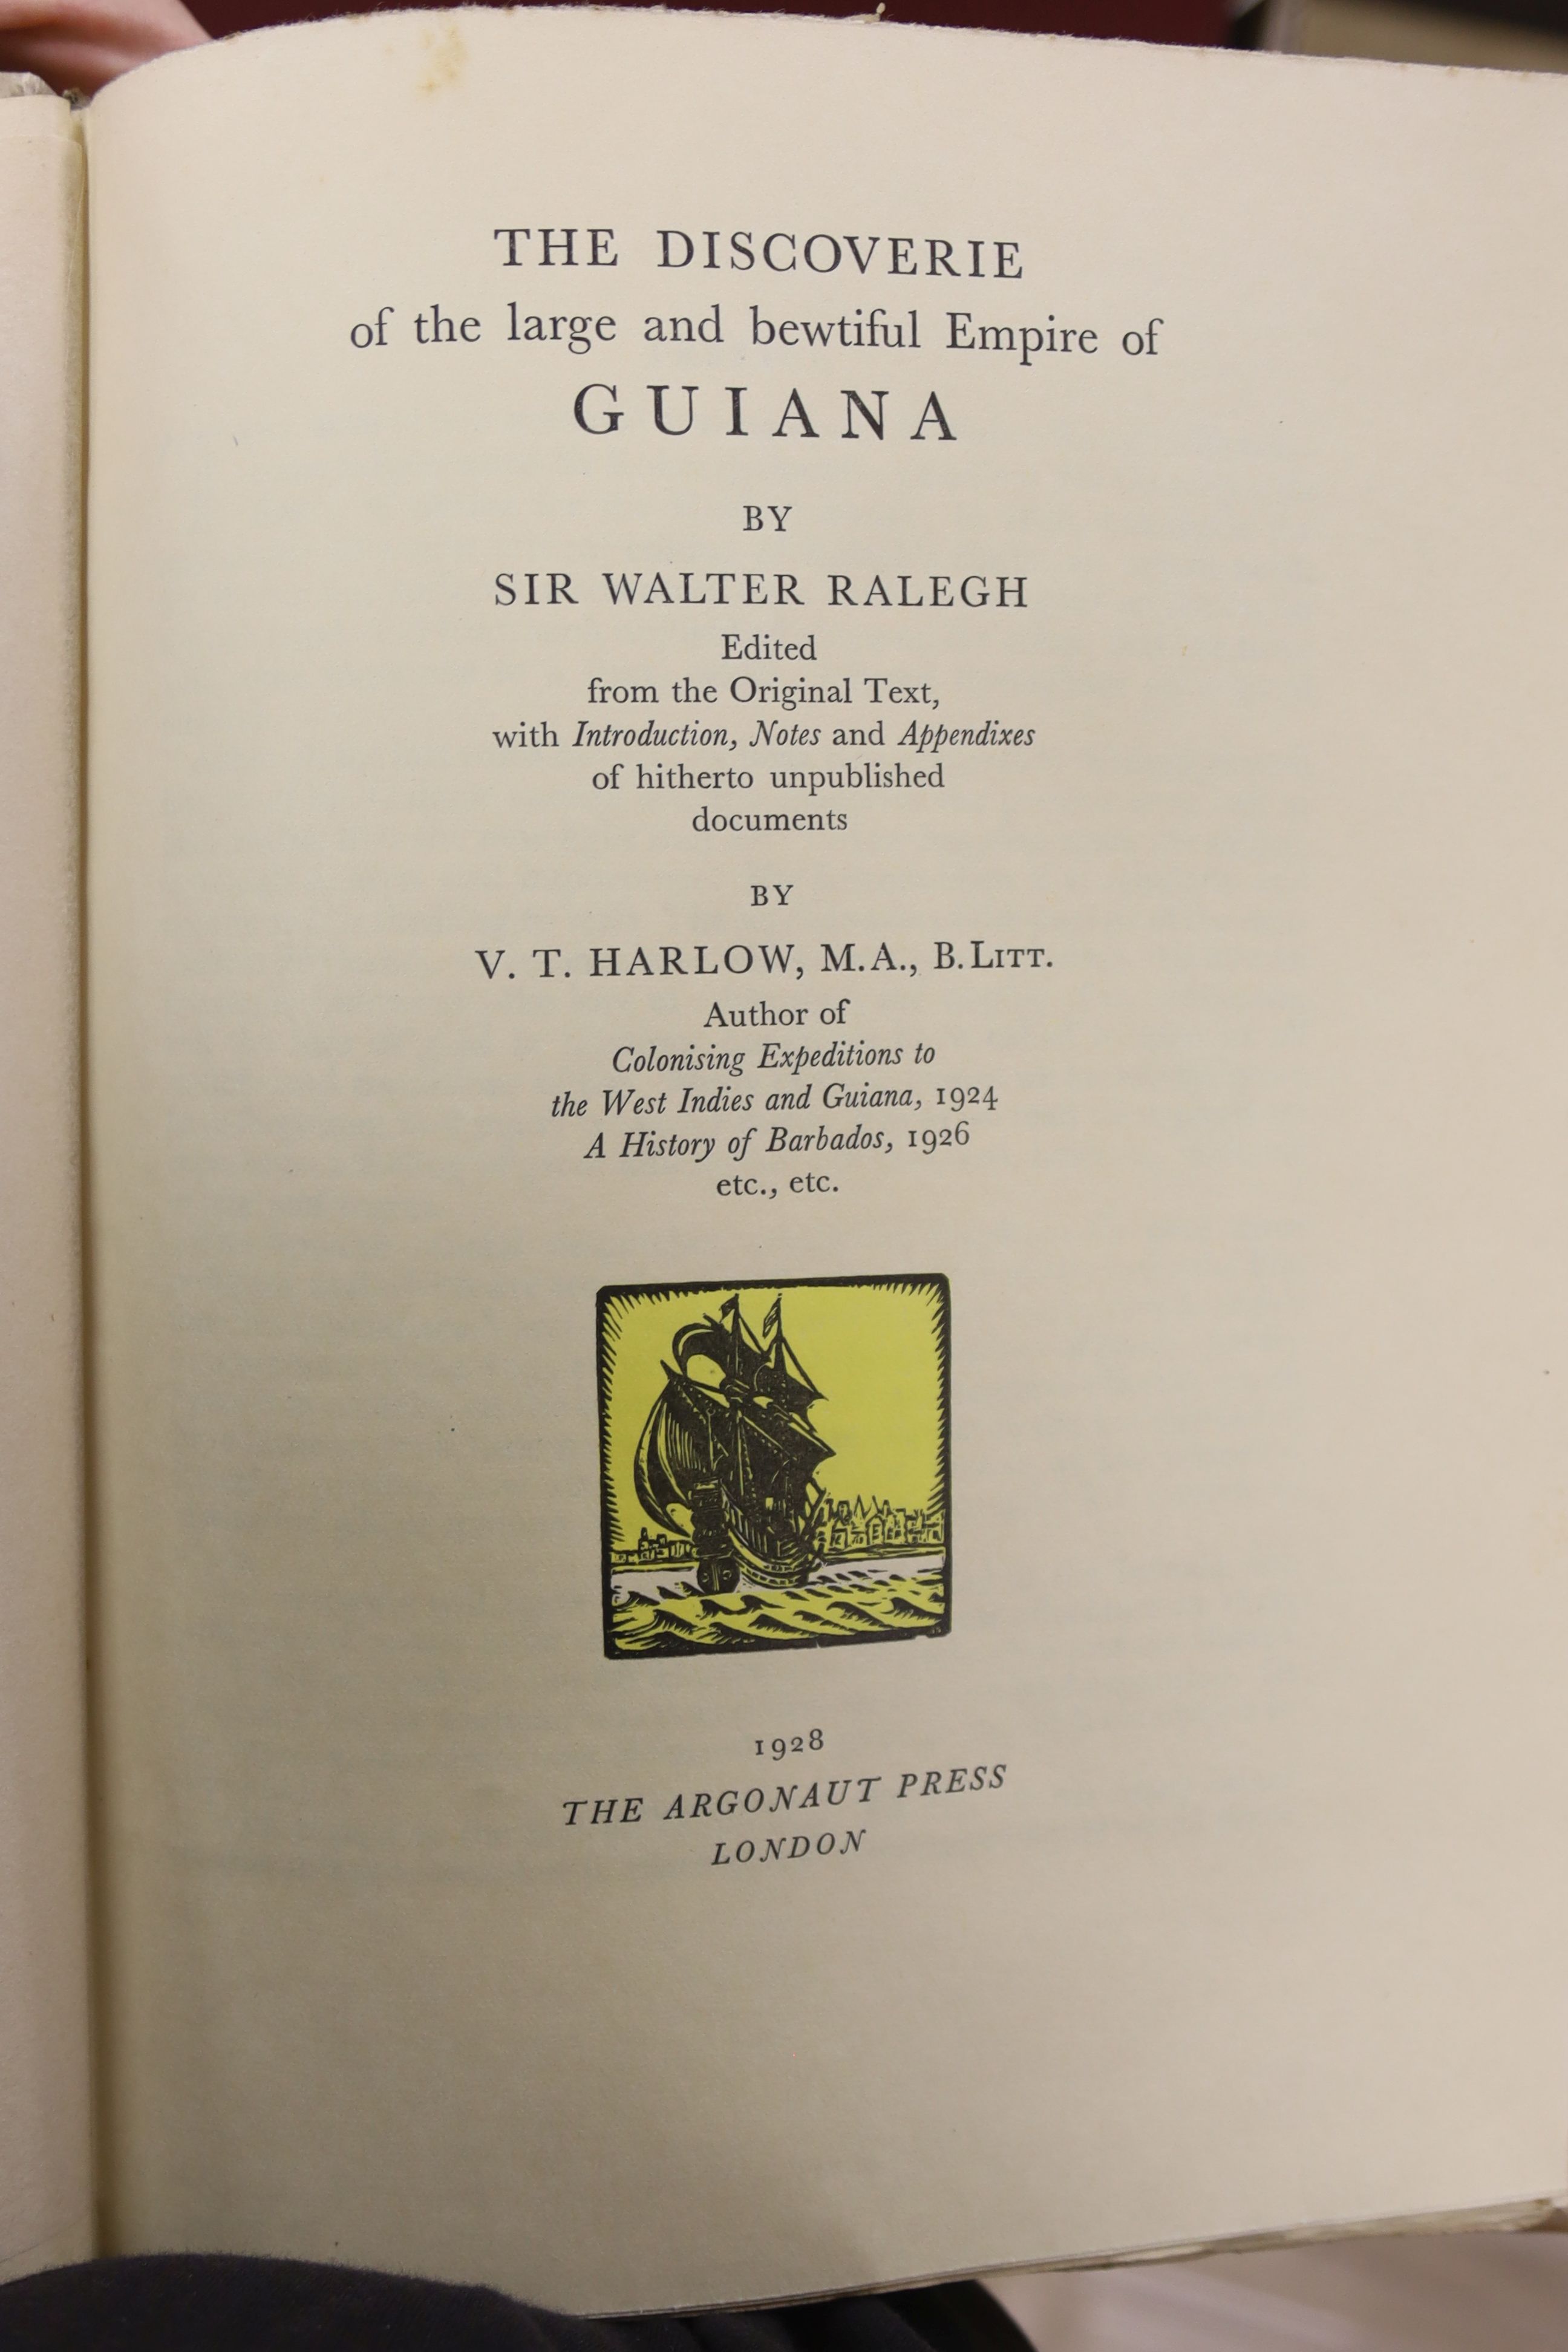 Argonaut Press, 11 vols, vellum bound, including Hamilton, William - A New Account of the East Indies, 1930